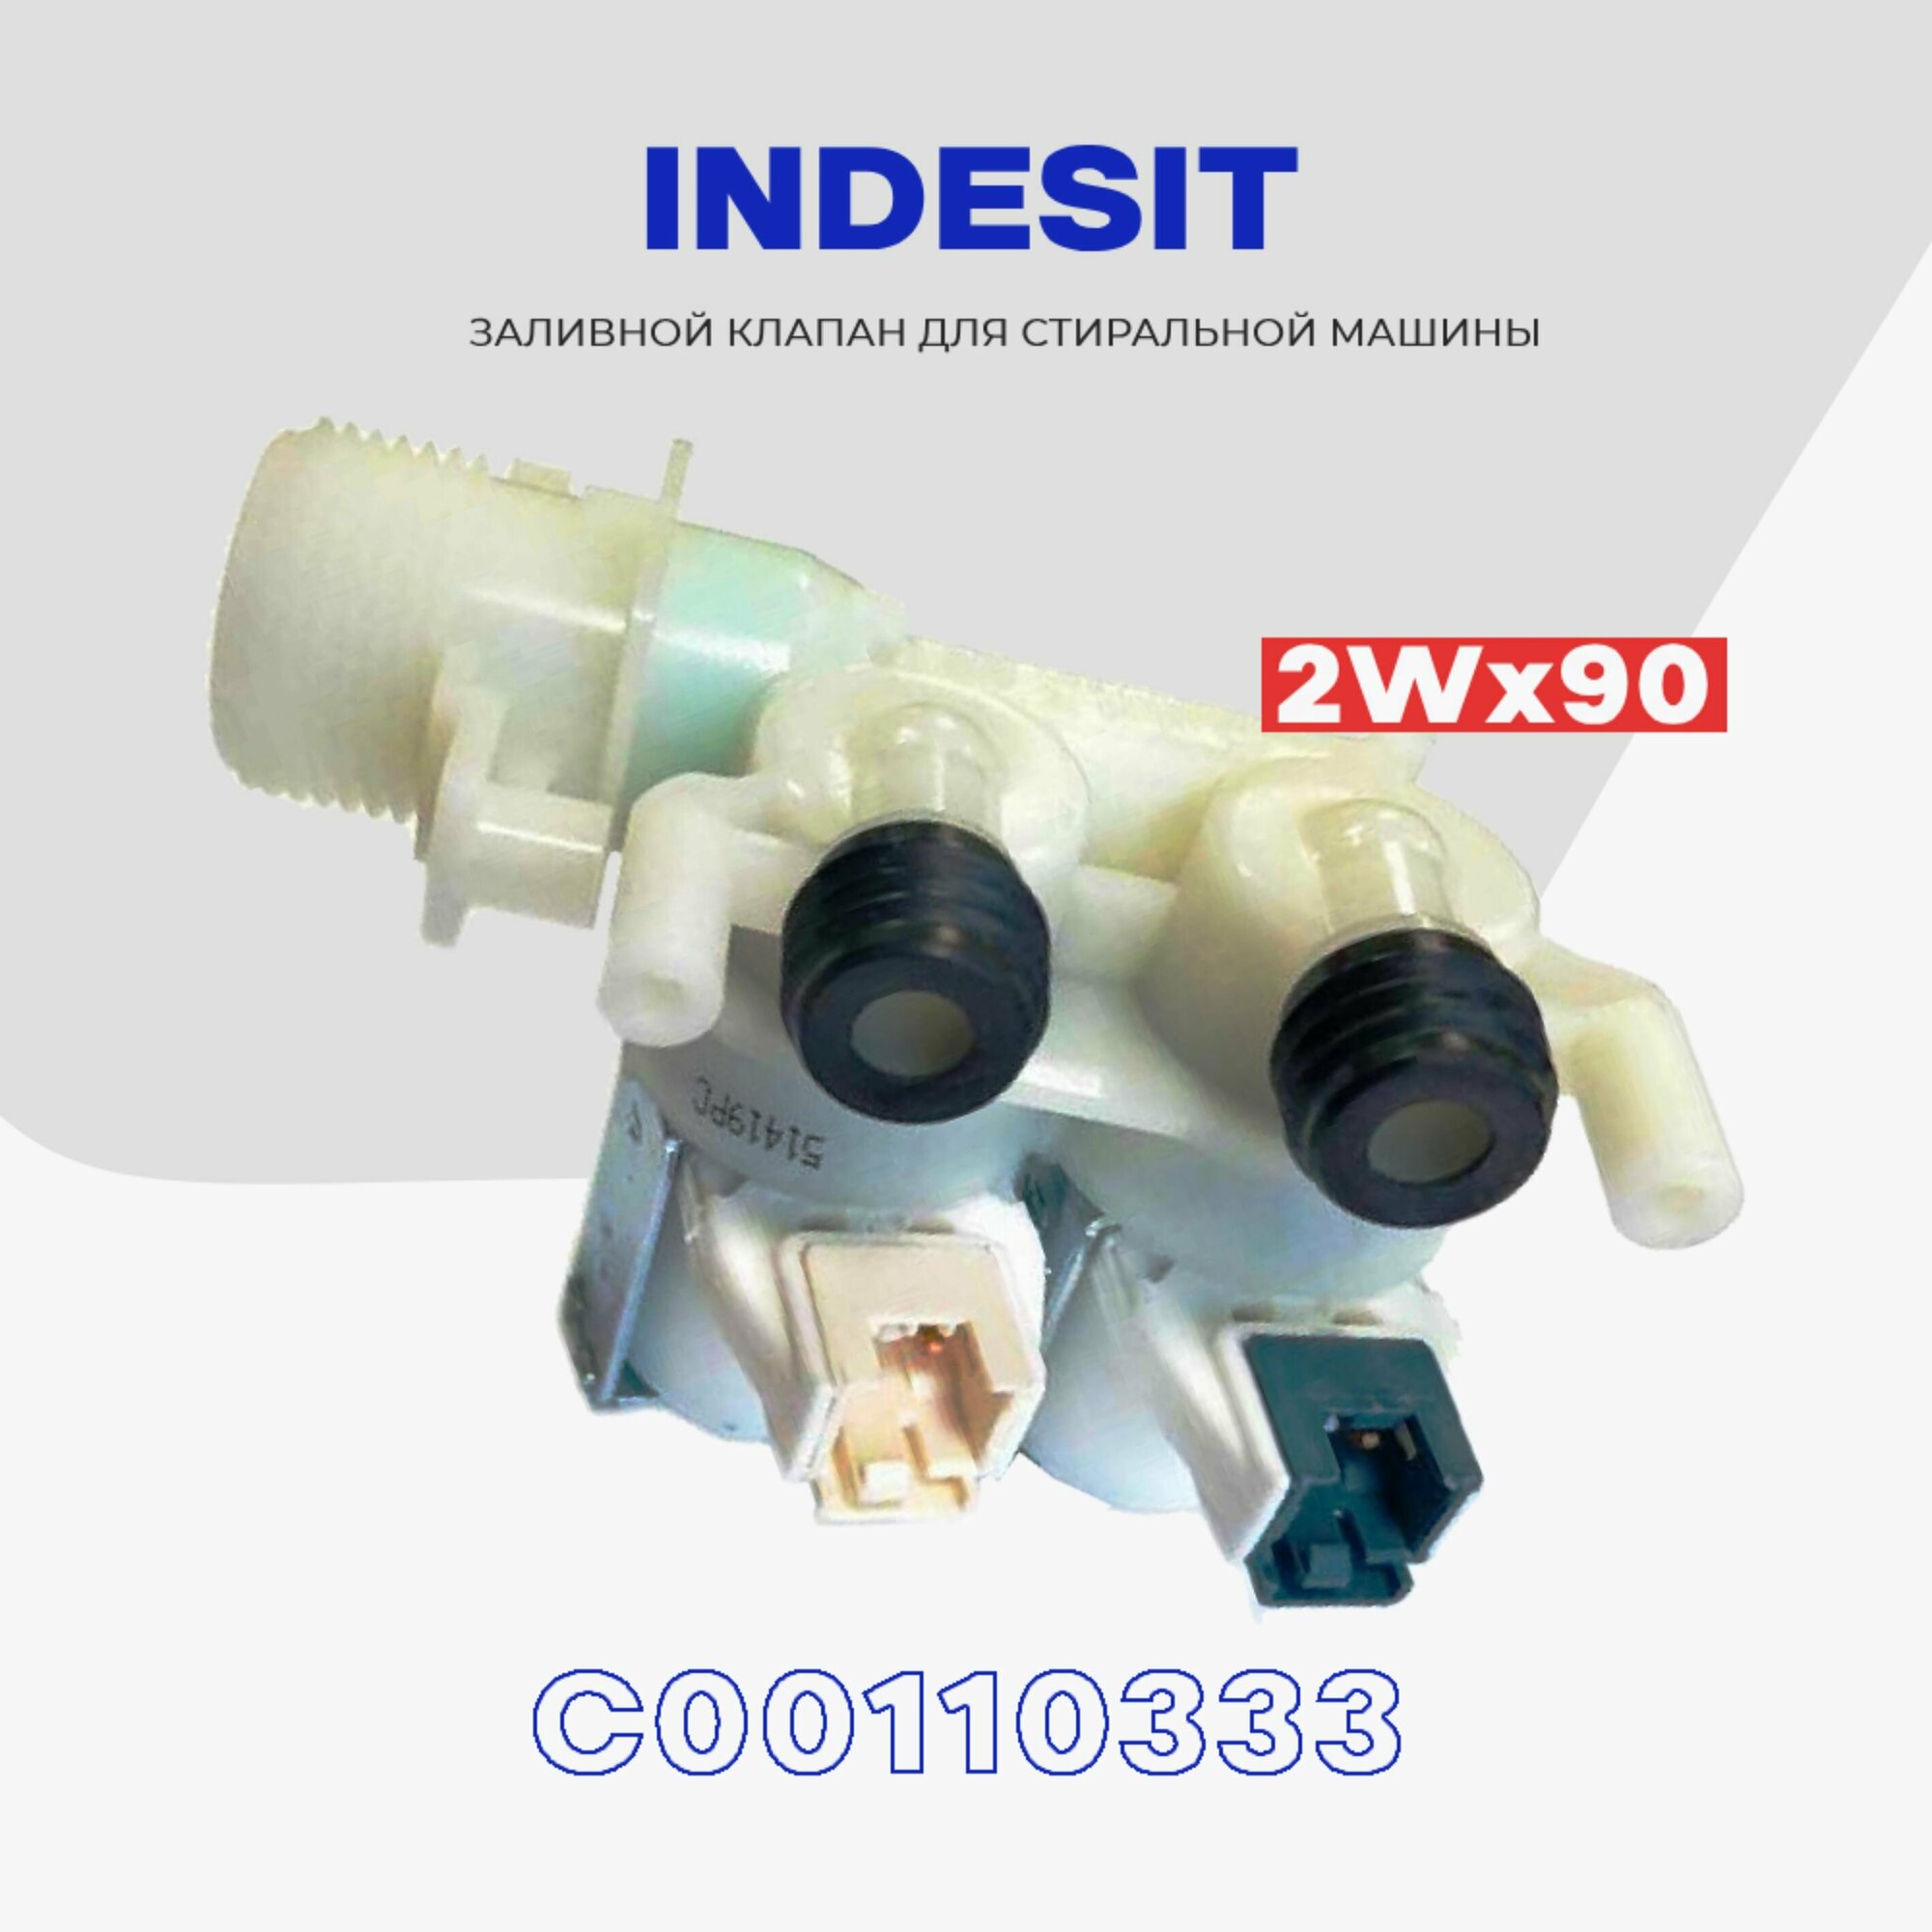 Клапан заливной для стиральной машины INDESIT C00110333 2Wx90 / Клапан подачи воды Индезит впускной 220V